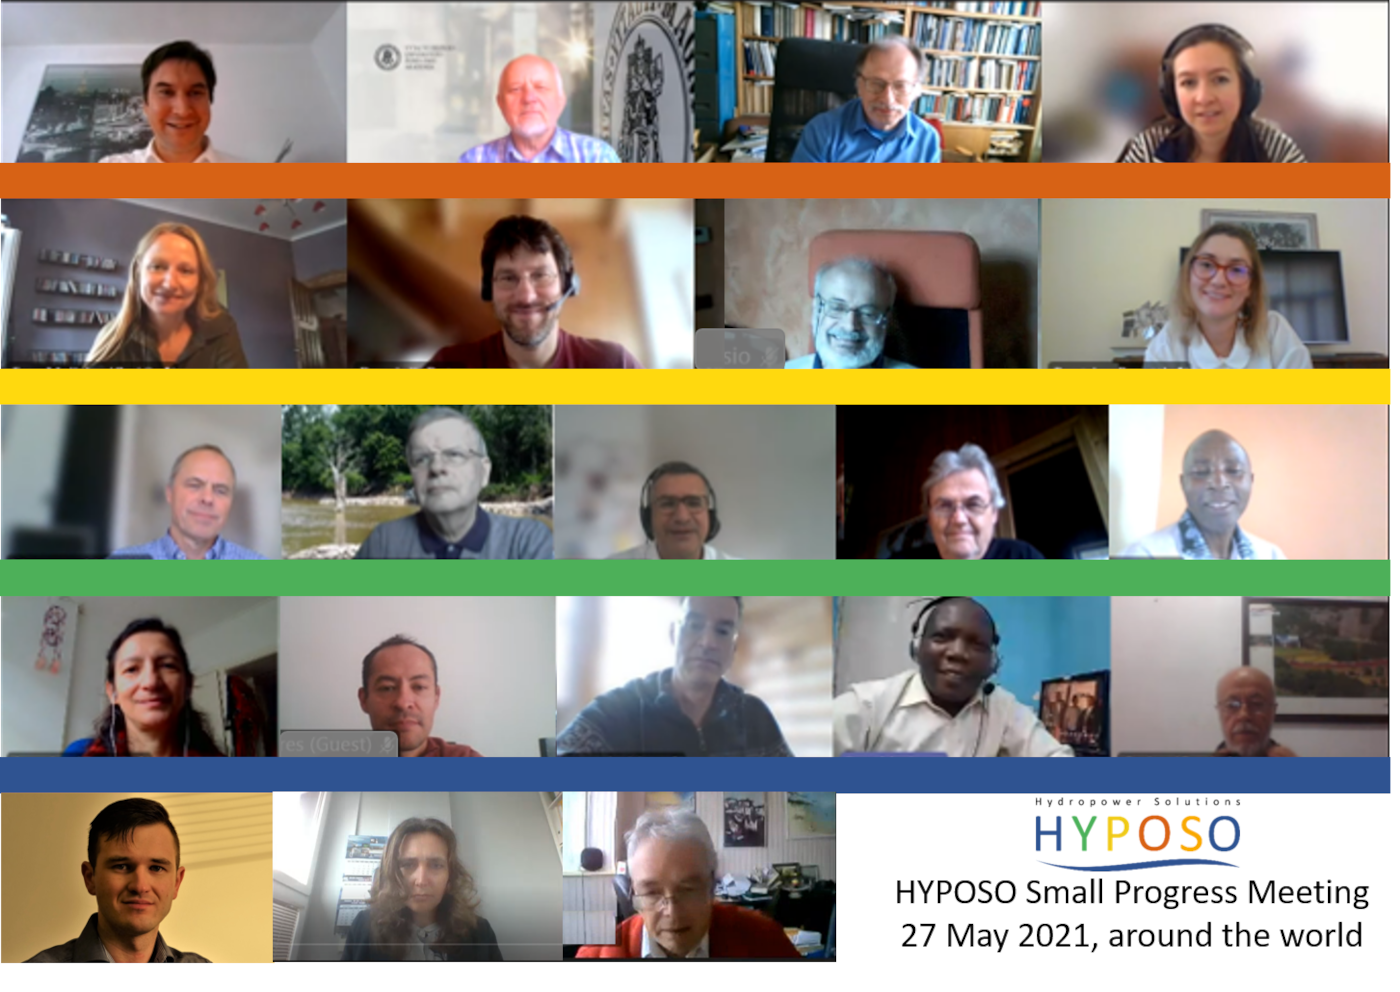 HYPOSO - participantes en la pequeña reunión de progreso